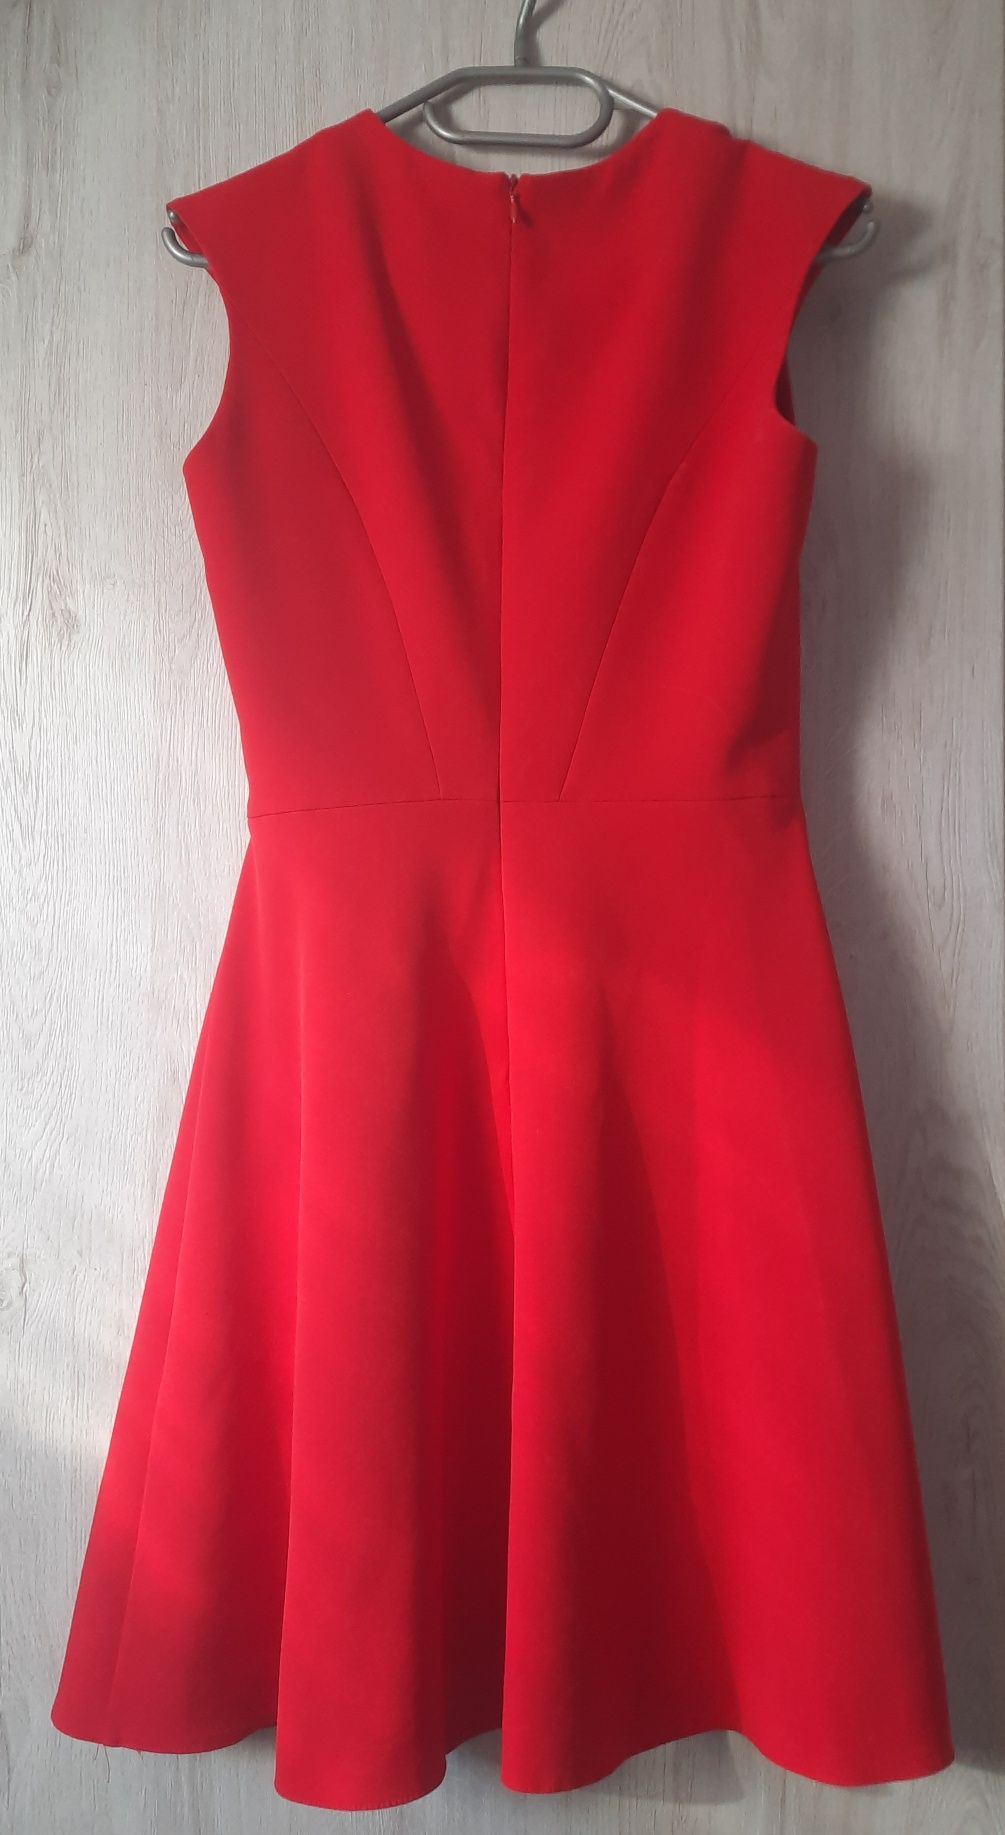 Sukienka czerwona na wesele, studniówka, bal r.36